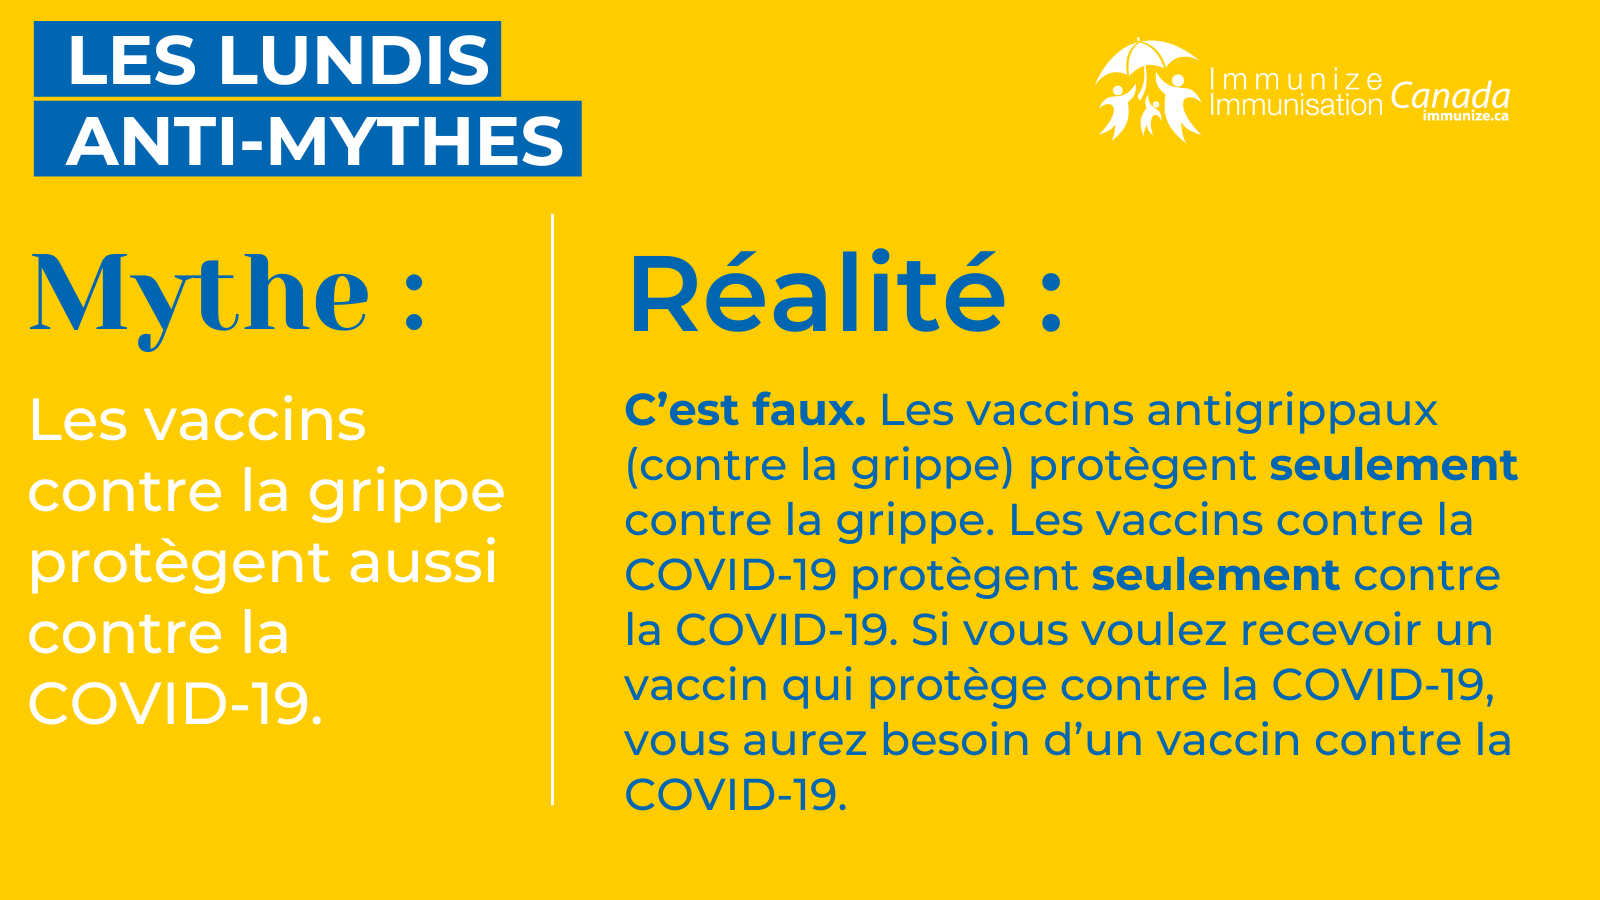 Les lundis anti-mythes (Twitter/X) - la grippe et la COVID-19